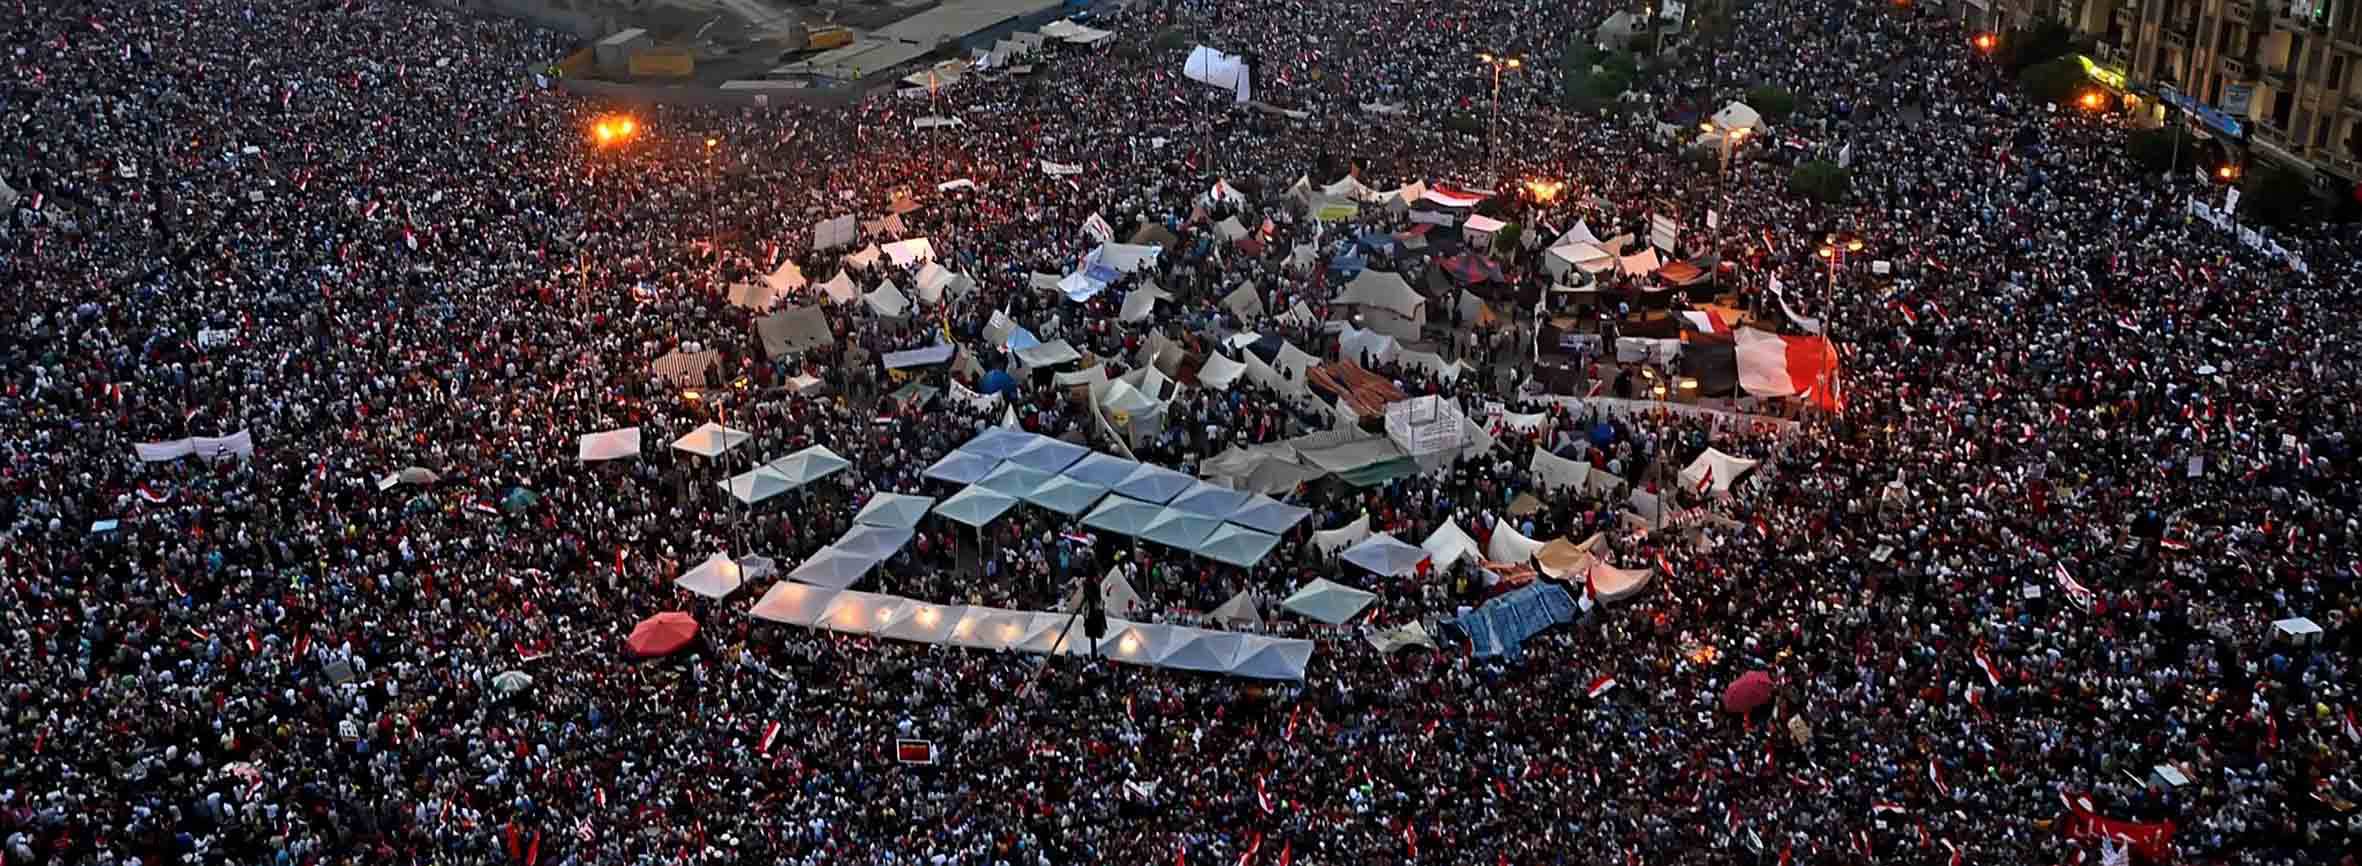 ثورة 30 يونيو في مصر اجمل صورة لثورة شعب صوري